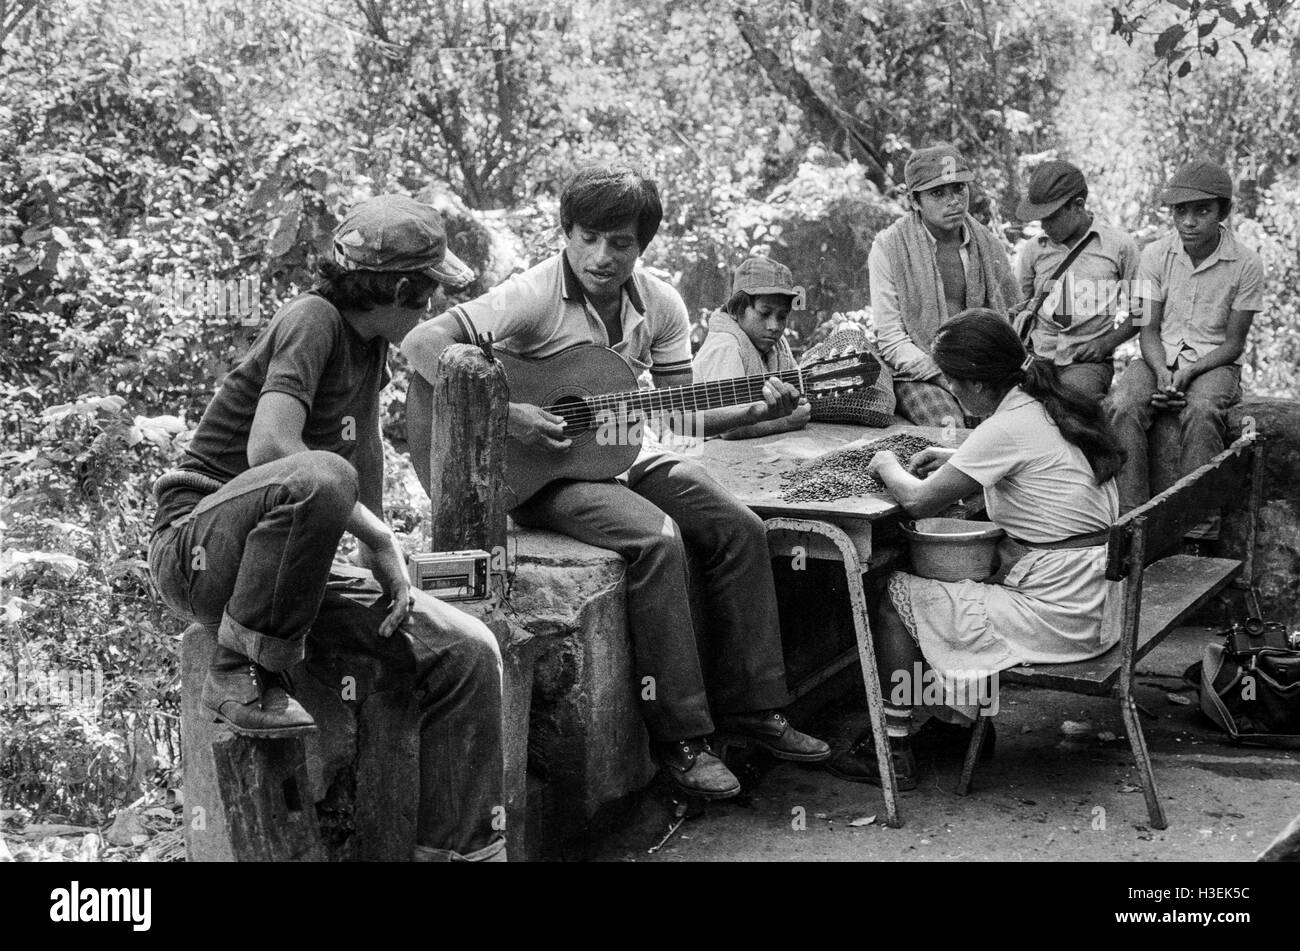 CHALATENANGO, EL SALVADOR, FEB 1984: - innerhalb der FPL Guerilla Zonen der Steuerung Teenager und junge Burschen, die Versorgung in der Nacht auf See-Cuscatlan Fähre Gitarrenmusik zu hören. Stockfoto